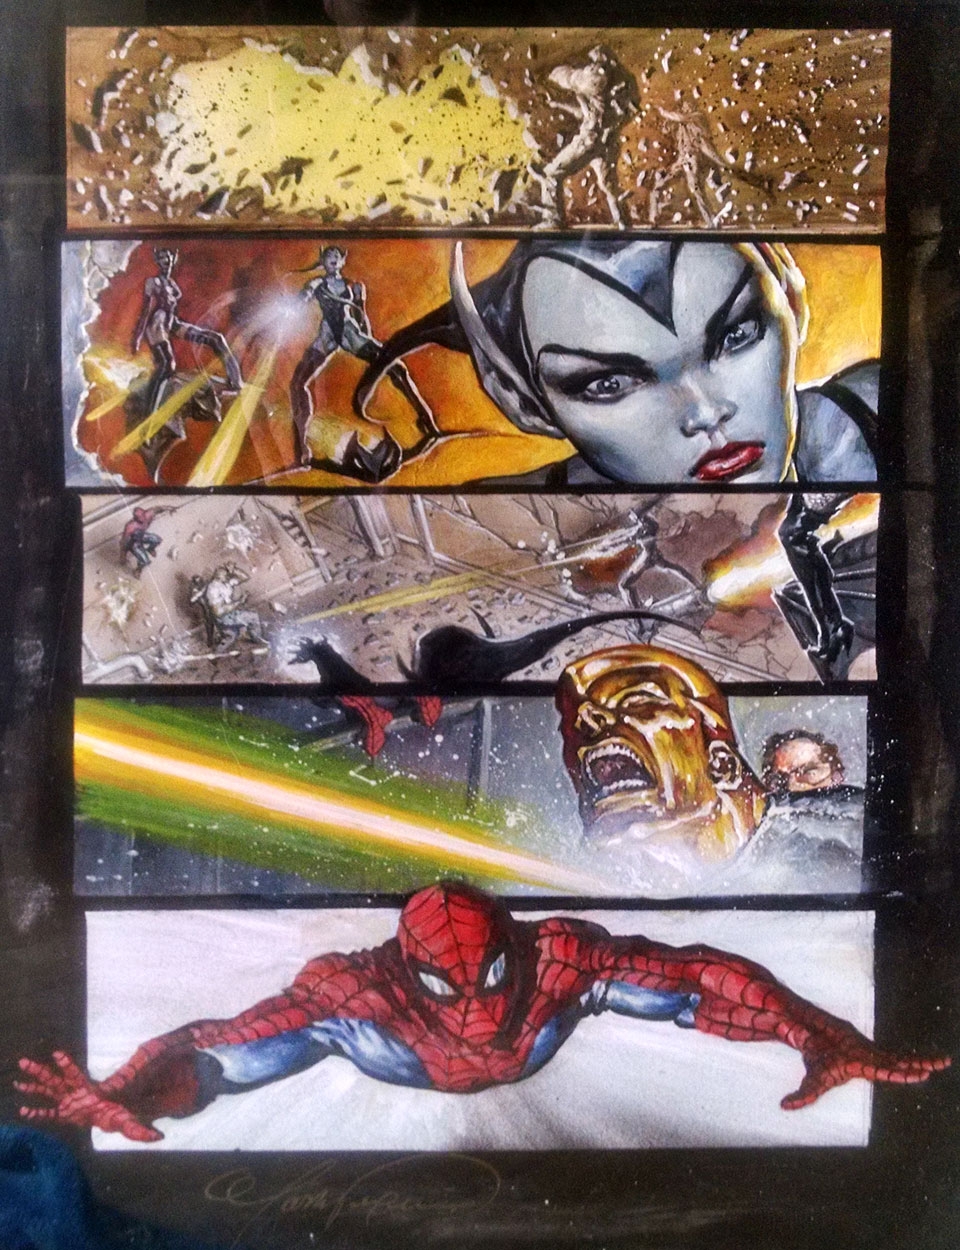 Spider-Man Legacy of Evil US-Marvel